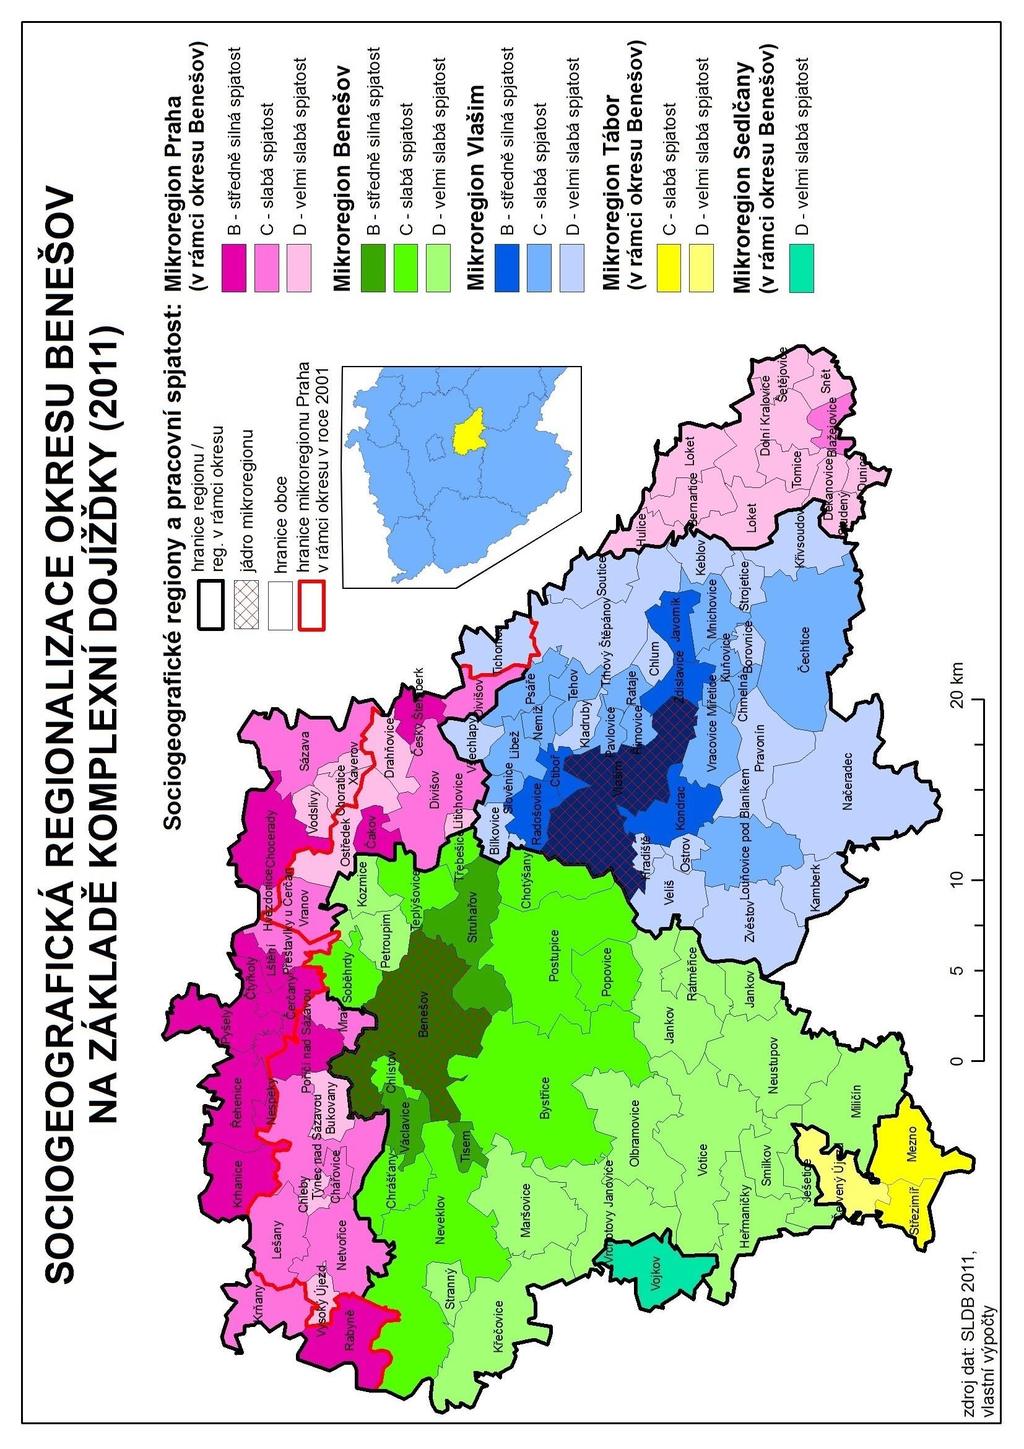 Obr. 11: Sociogeografická regionalizace okresu Benešov na